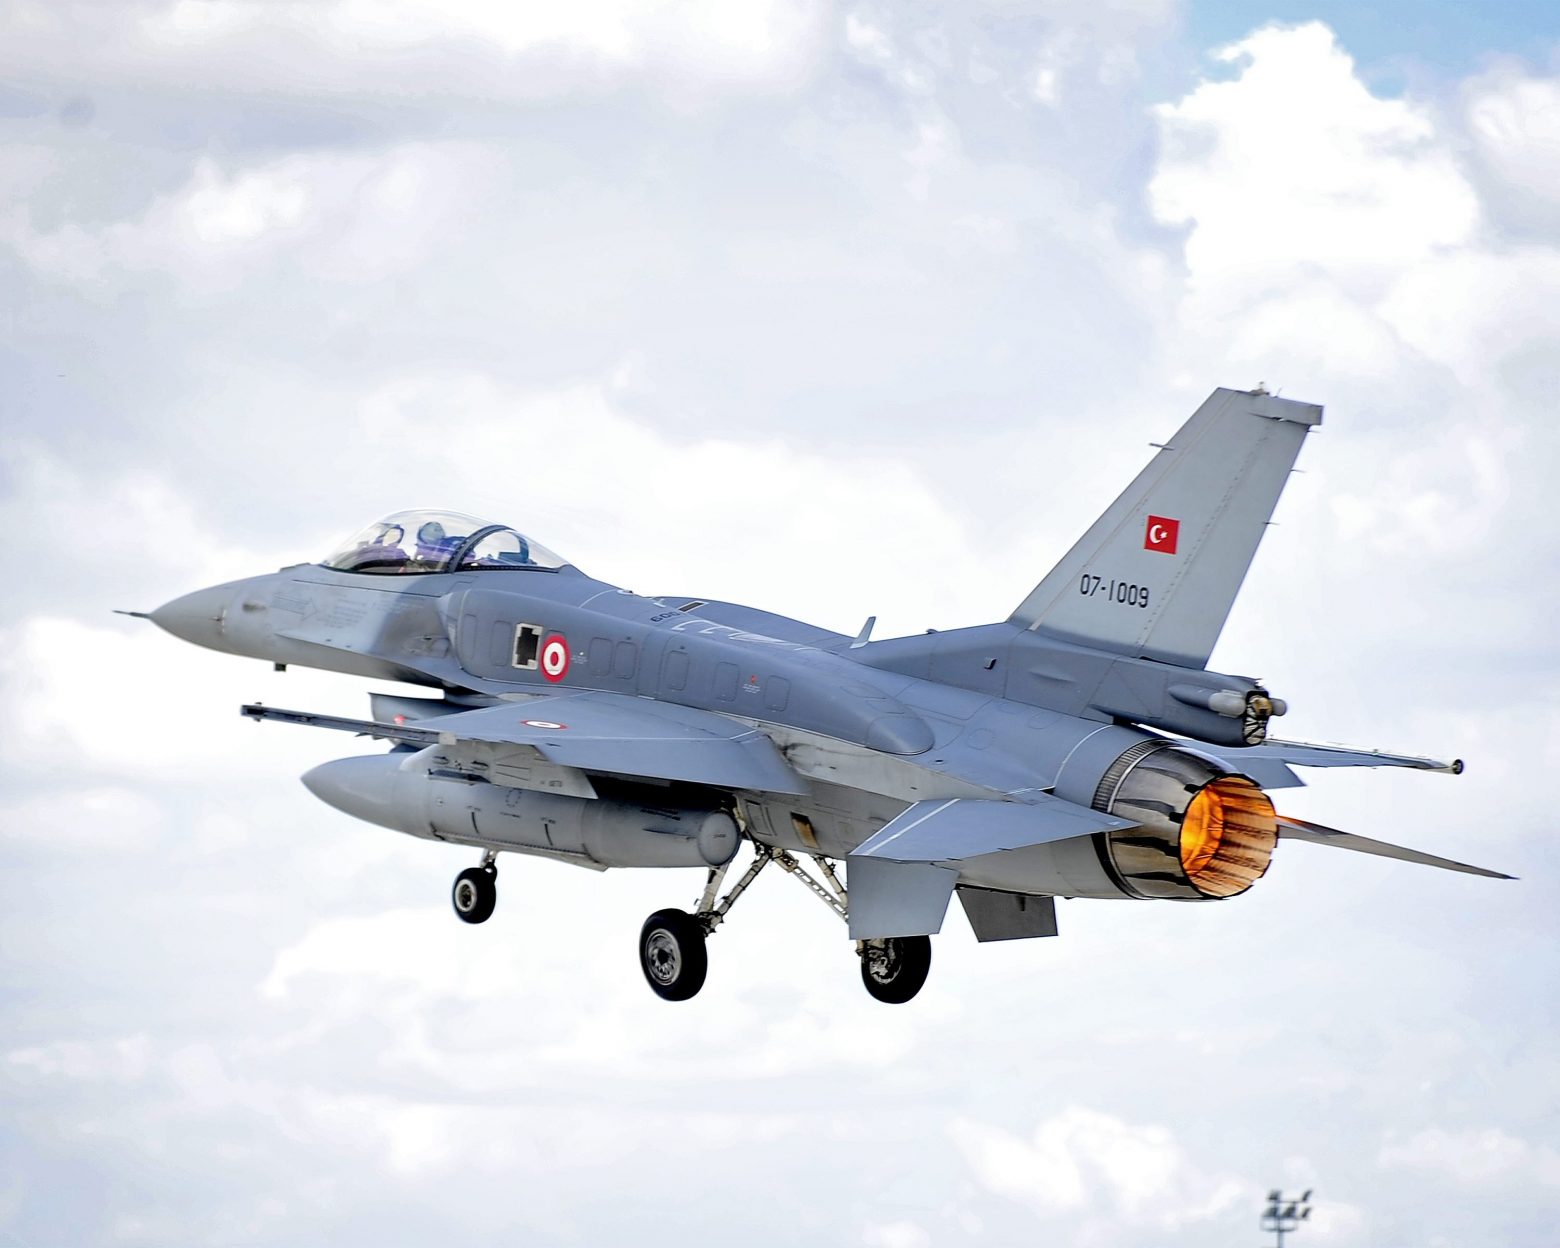 Τουρκία: «Σημαντική αλλαγή» στη στάση της Δύσης - Ξεμπλοκάρουν στρατιωτικά προγράμματα